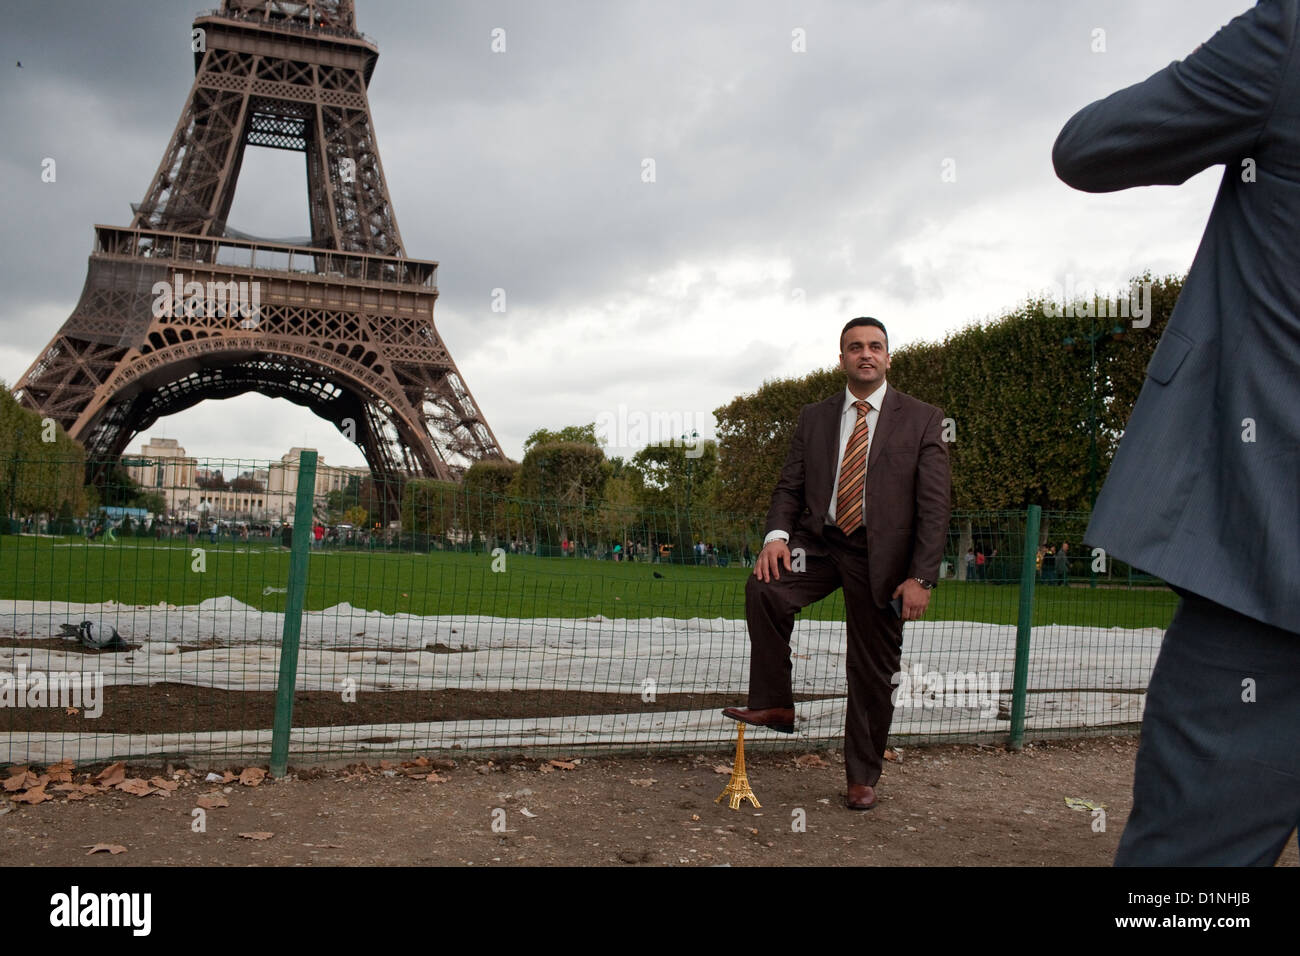 Turista posando para fotos en el parque, cerca de la Torre Eiffel en París, Francia Foto de stock